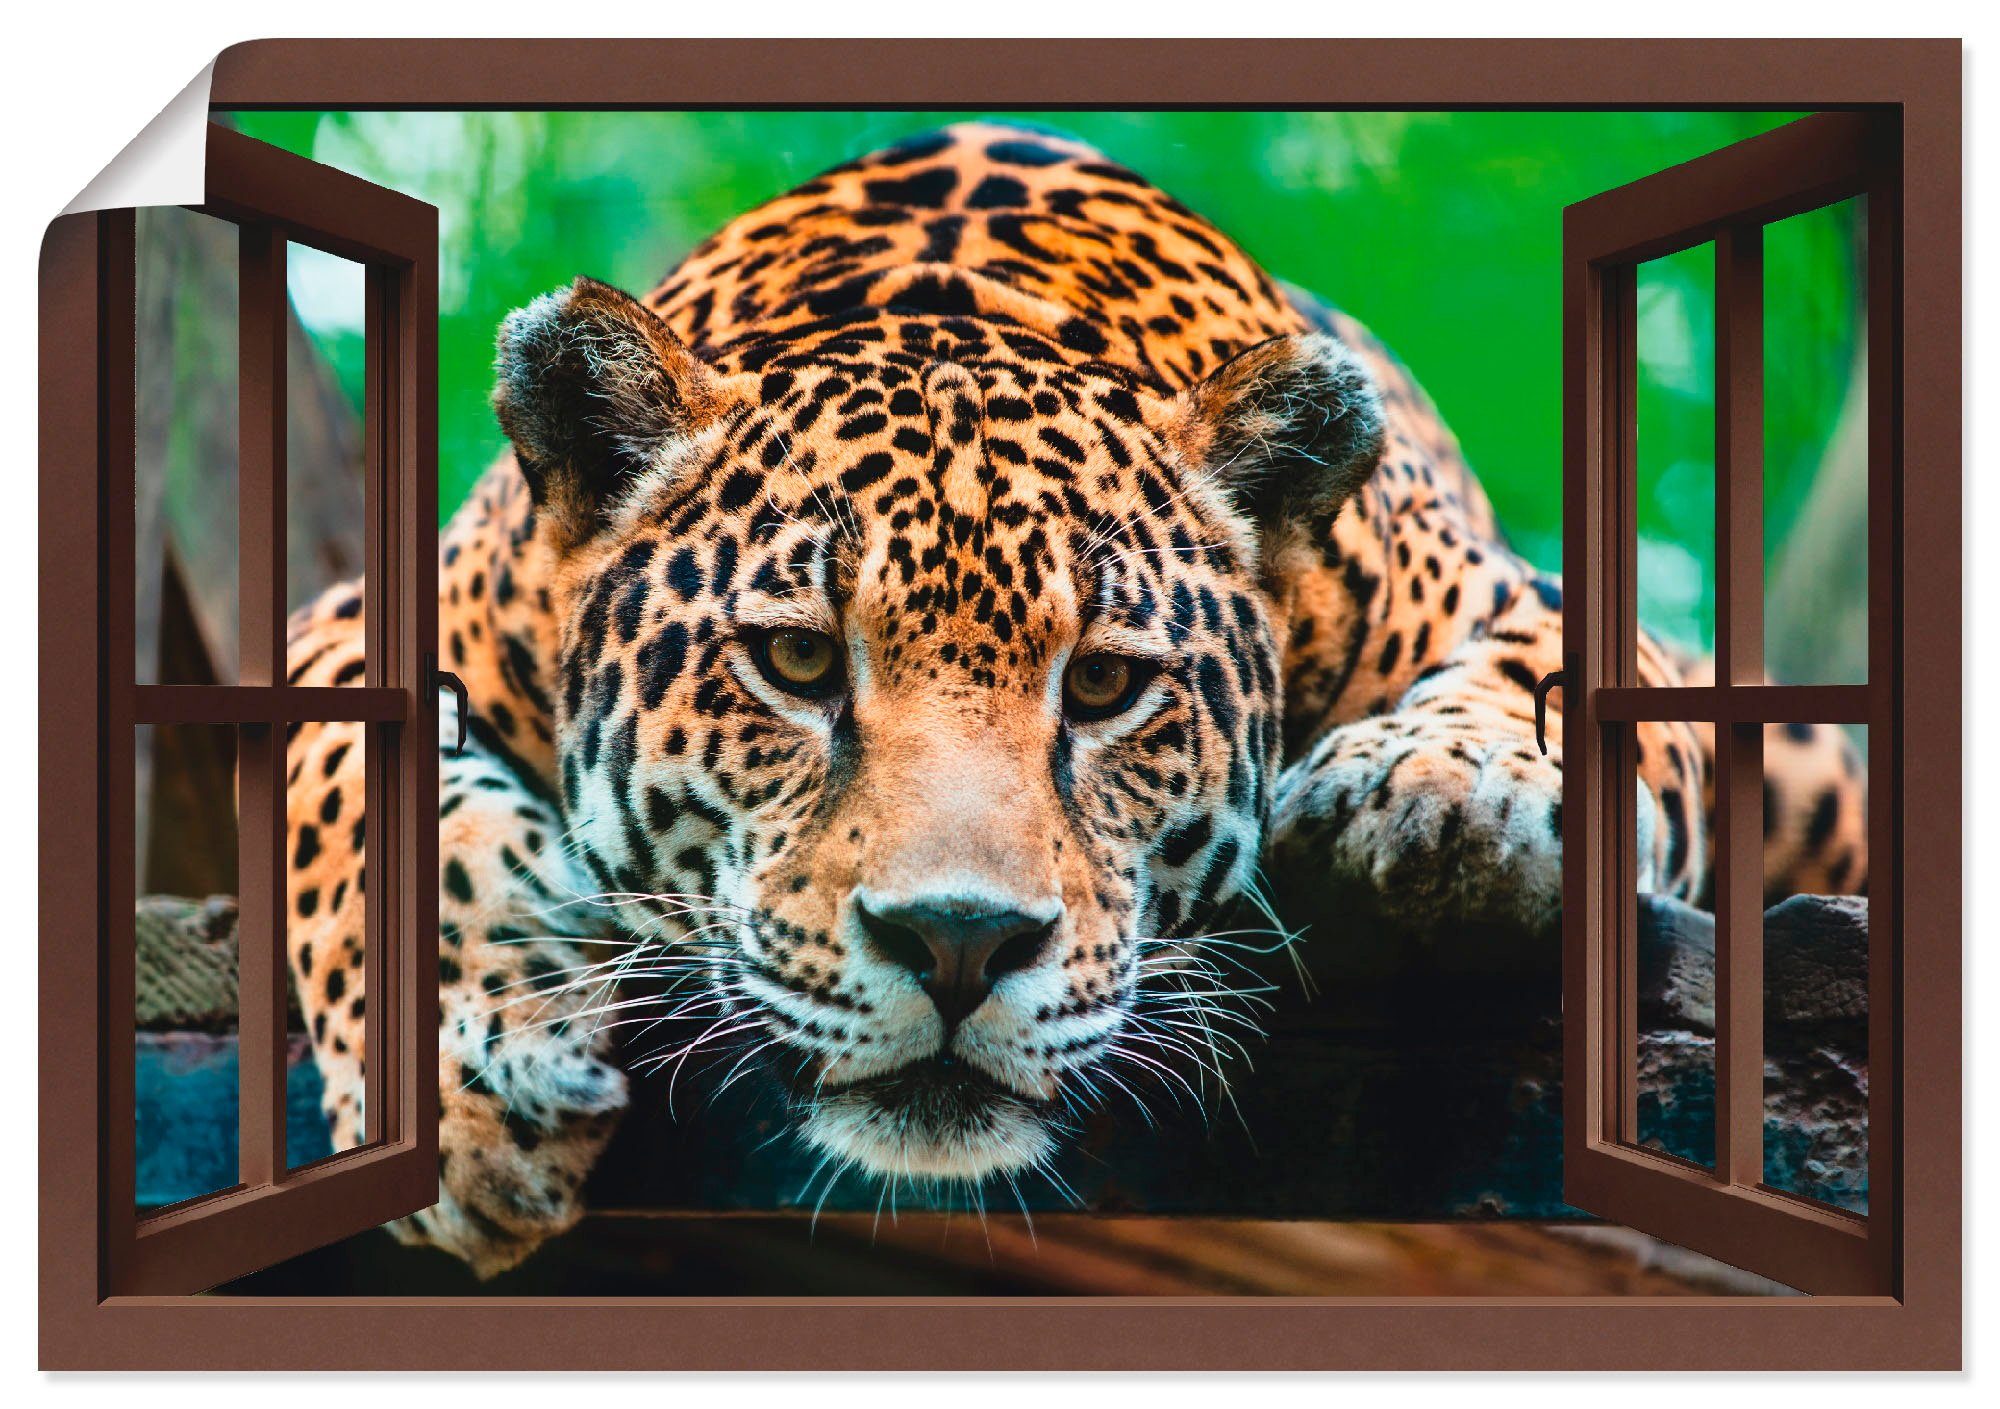 Artland Artprint Blik uit het venster - Zuid-Amerikaanse jaguar in vele afmetingen & productsoorten - artprint van aluminium / artprint voor buiten, artprint op linnen, poster, muu